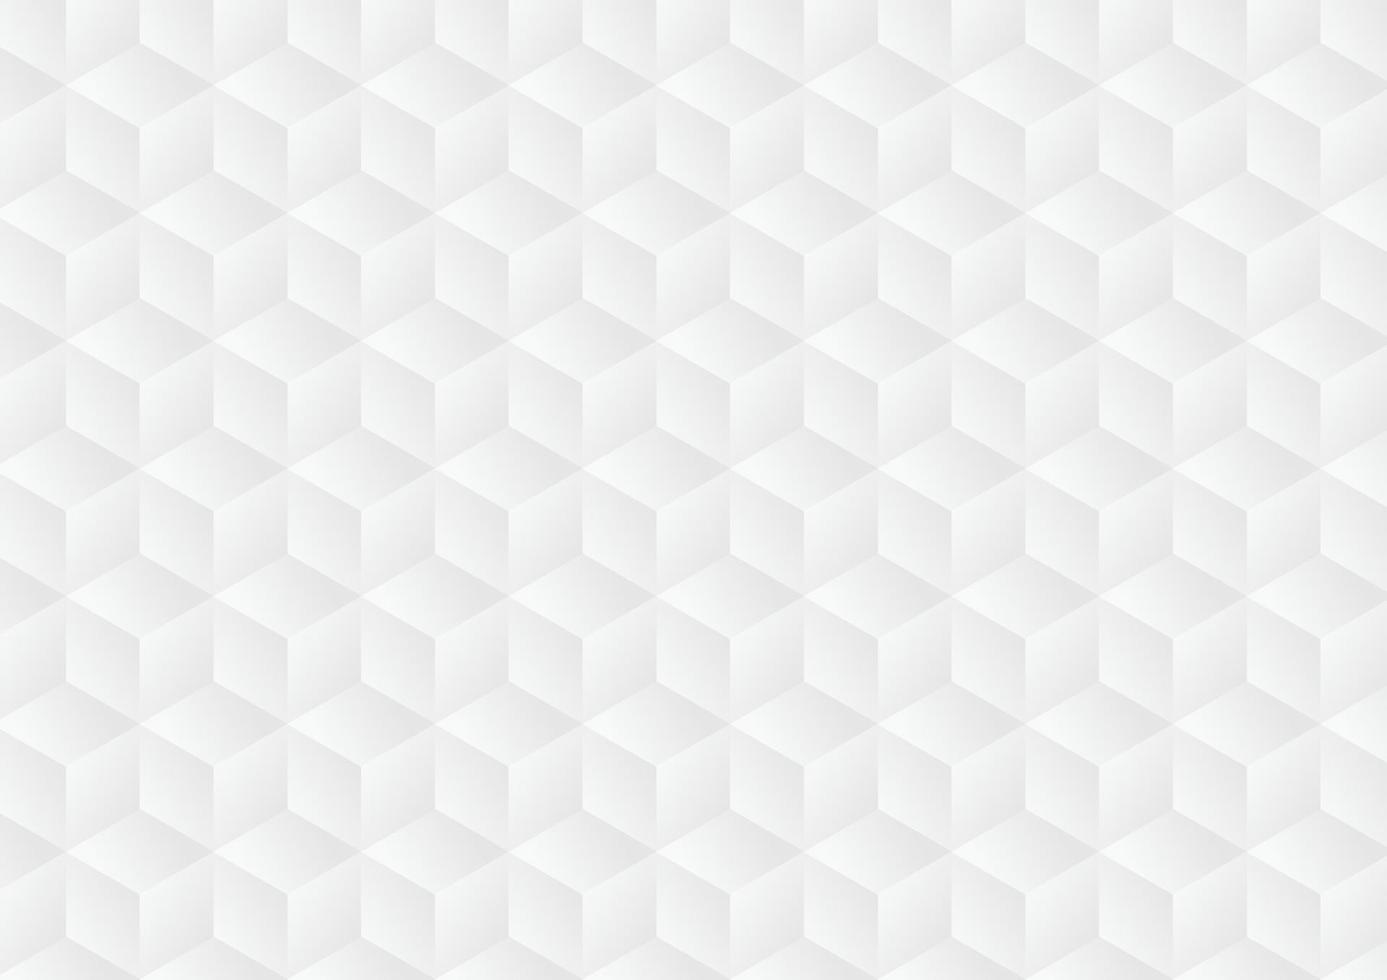 texture de fond géométrique abstrait blanc et gris vecteur